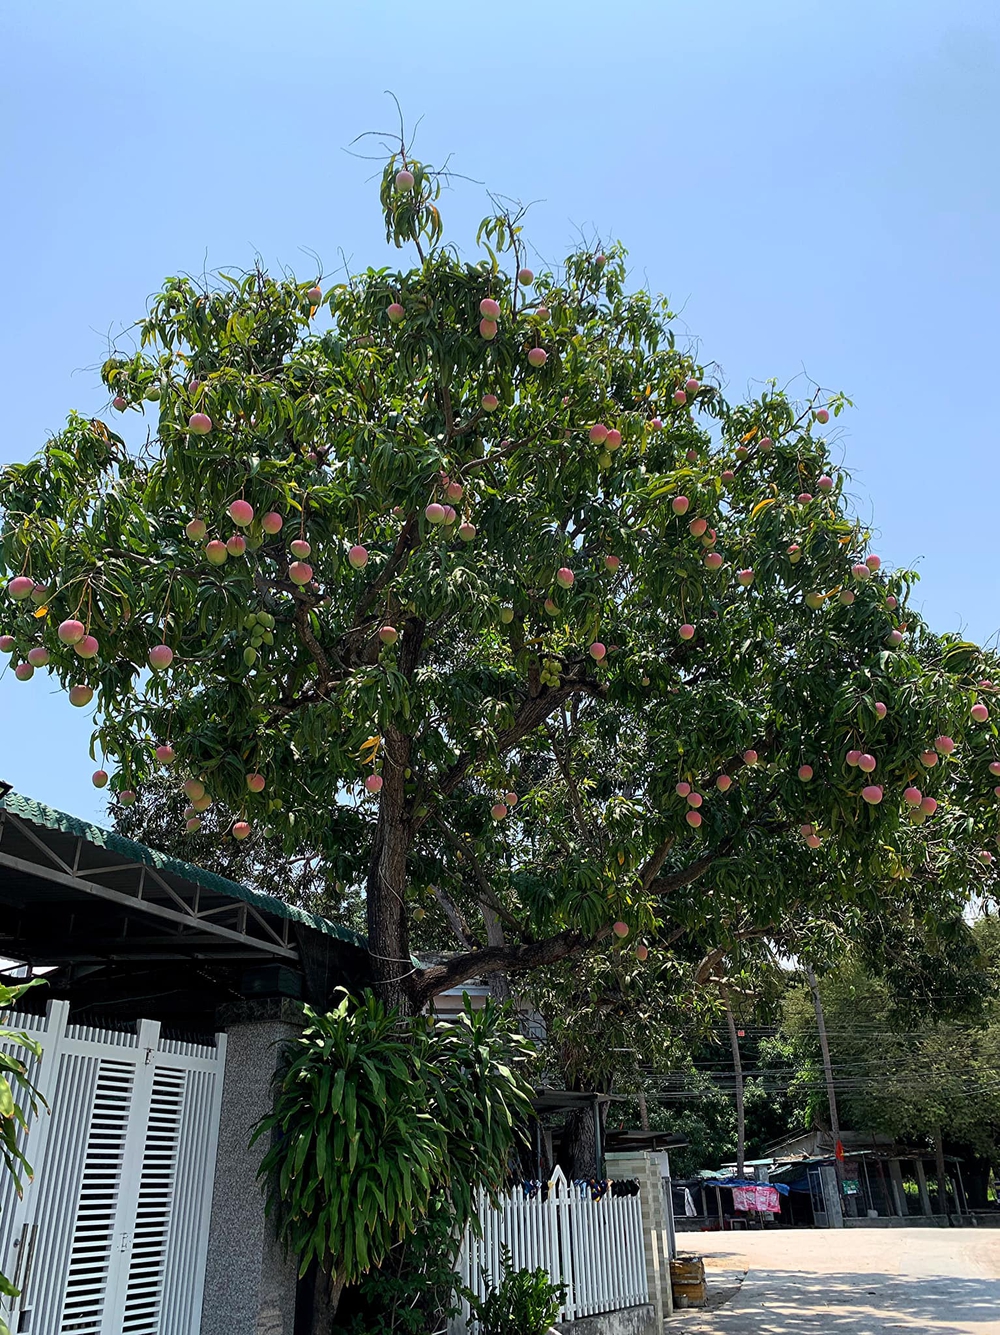 Truy tìm cây xoài được ca ngợi đẹp nhất Việt Nam, quả hồng đỏ như đào tiên, ai đi qua cũng dặn lòng không nỡ hái - Ảnh 1.